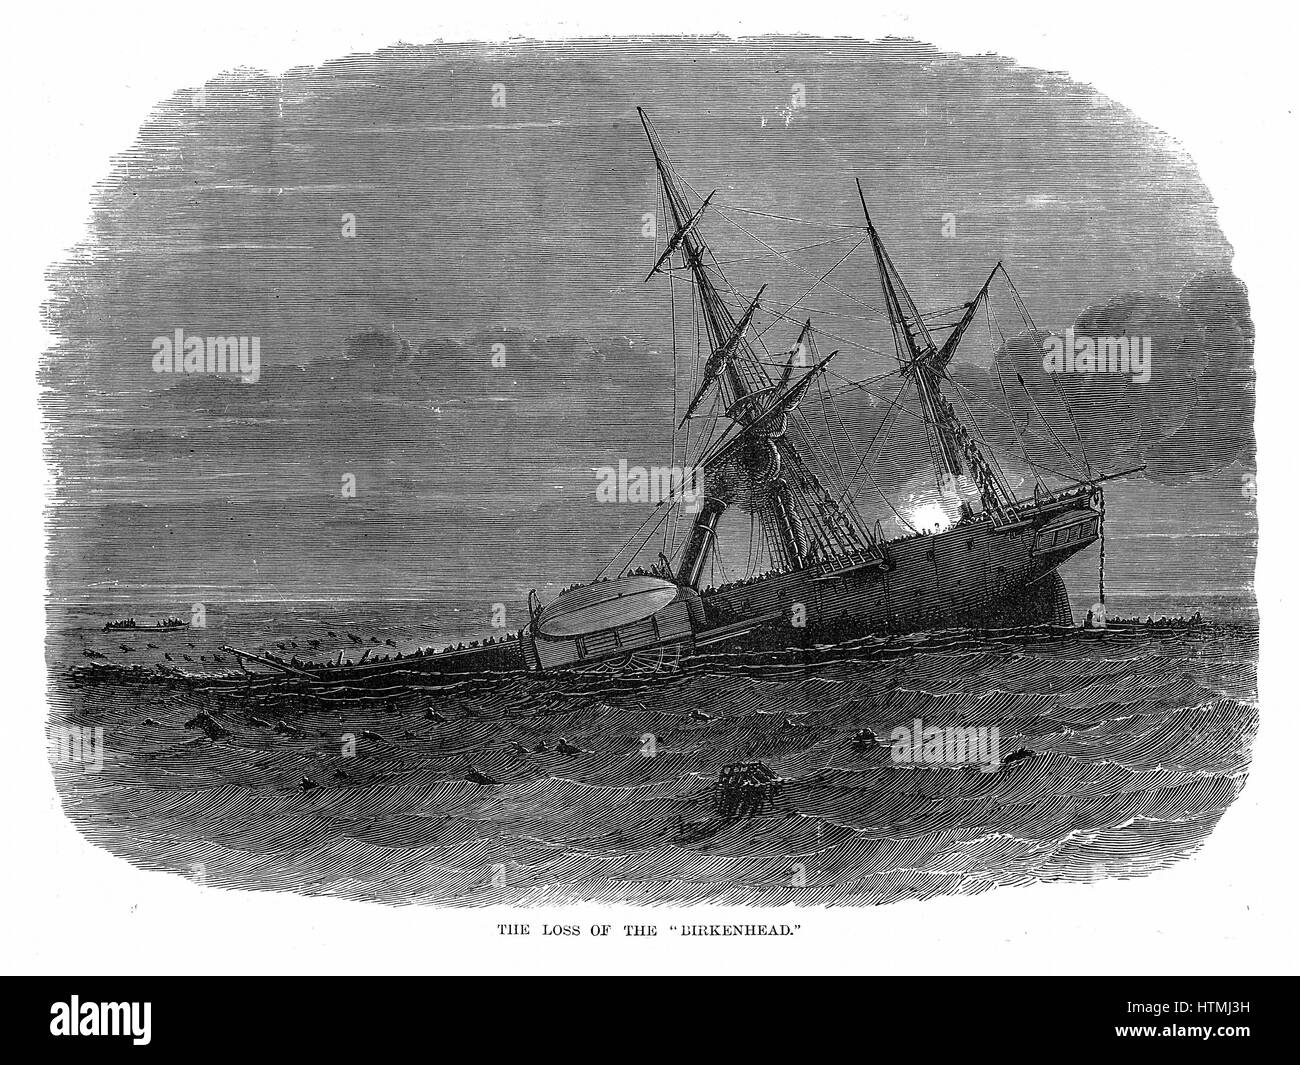 Verlust von Eisen Raddampfer Truppe "Birkenhead" aus Simons Bay Südafrika Schiff 26. Februar 1852. Kommandierender Offizier, Oberst Seton, gab den Befehl Frauen und Kinder erste. Männer standen auf dem Deck warten auf ihr Schicksal. Von 638 an Bord 184 wurden gerettet durch die Stockfoto